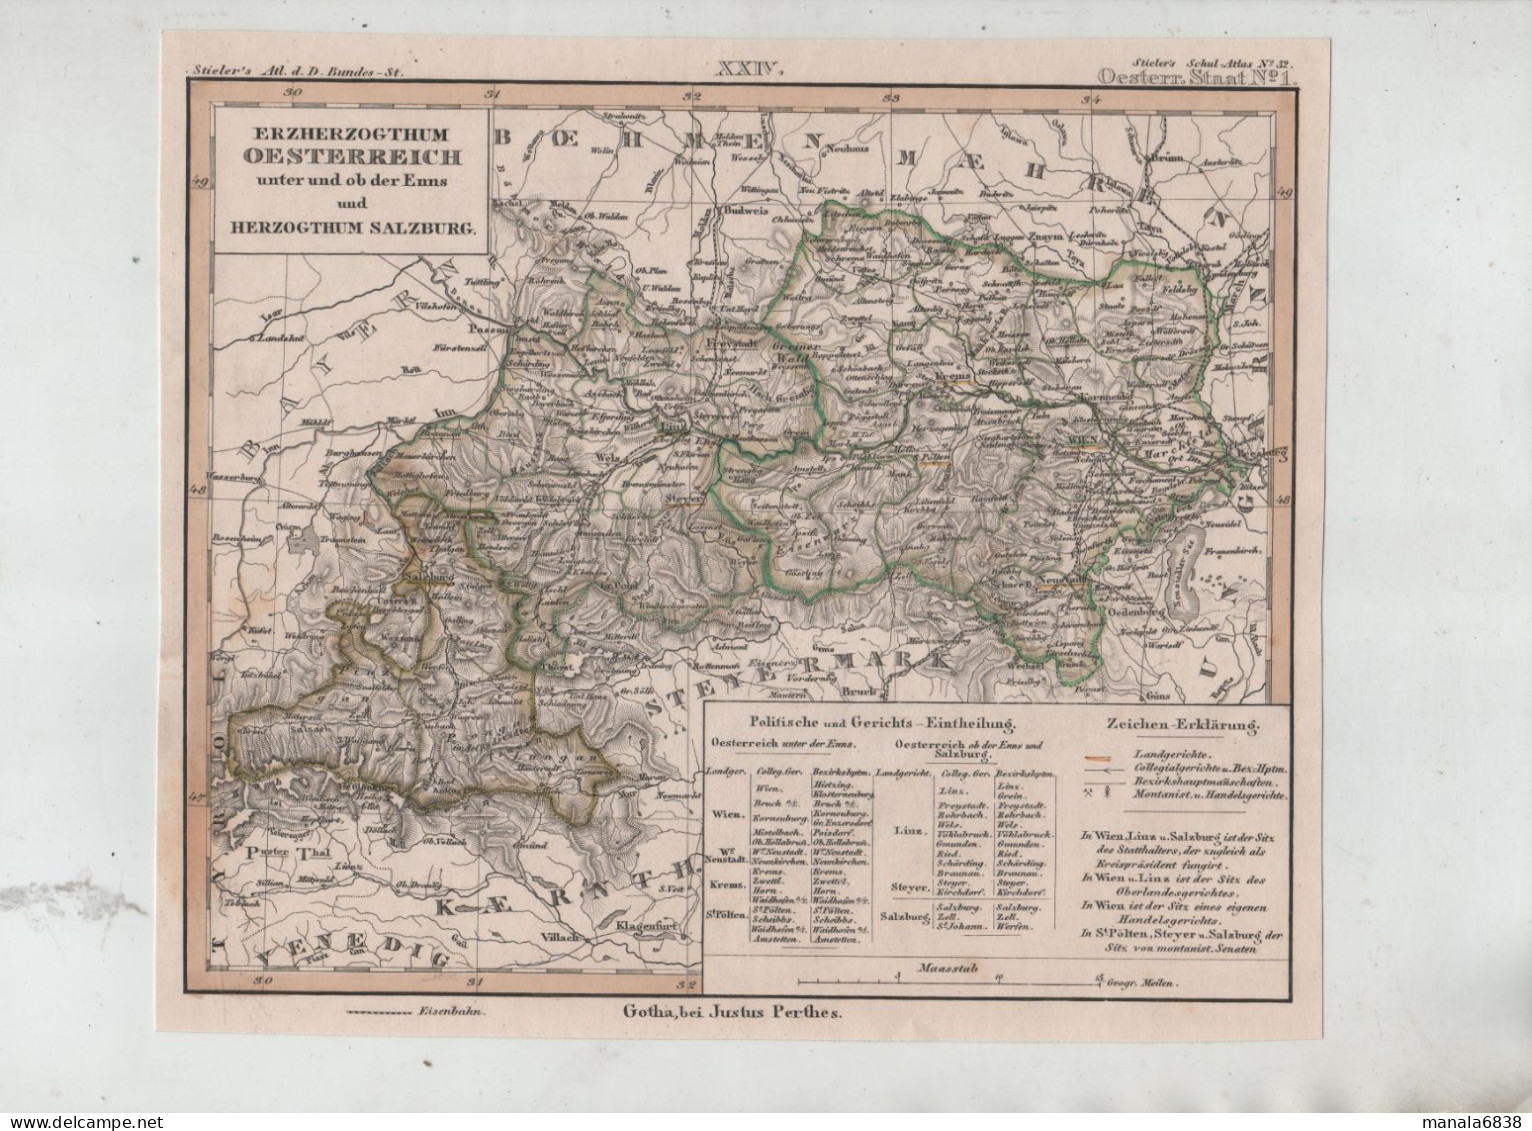 Erzherzogthum Oesterreich Unter Und Ob Der Enns Und Herzogthum Salzburg Gotha Bei Justus Perthes - Geographical Maps